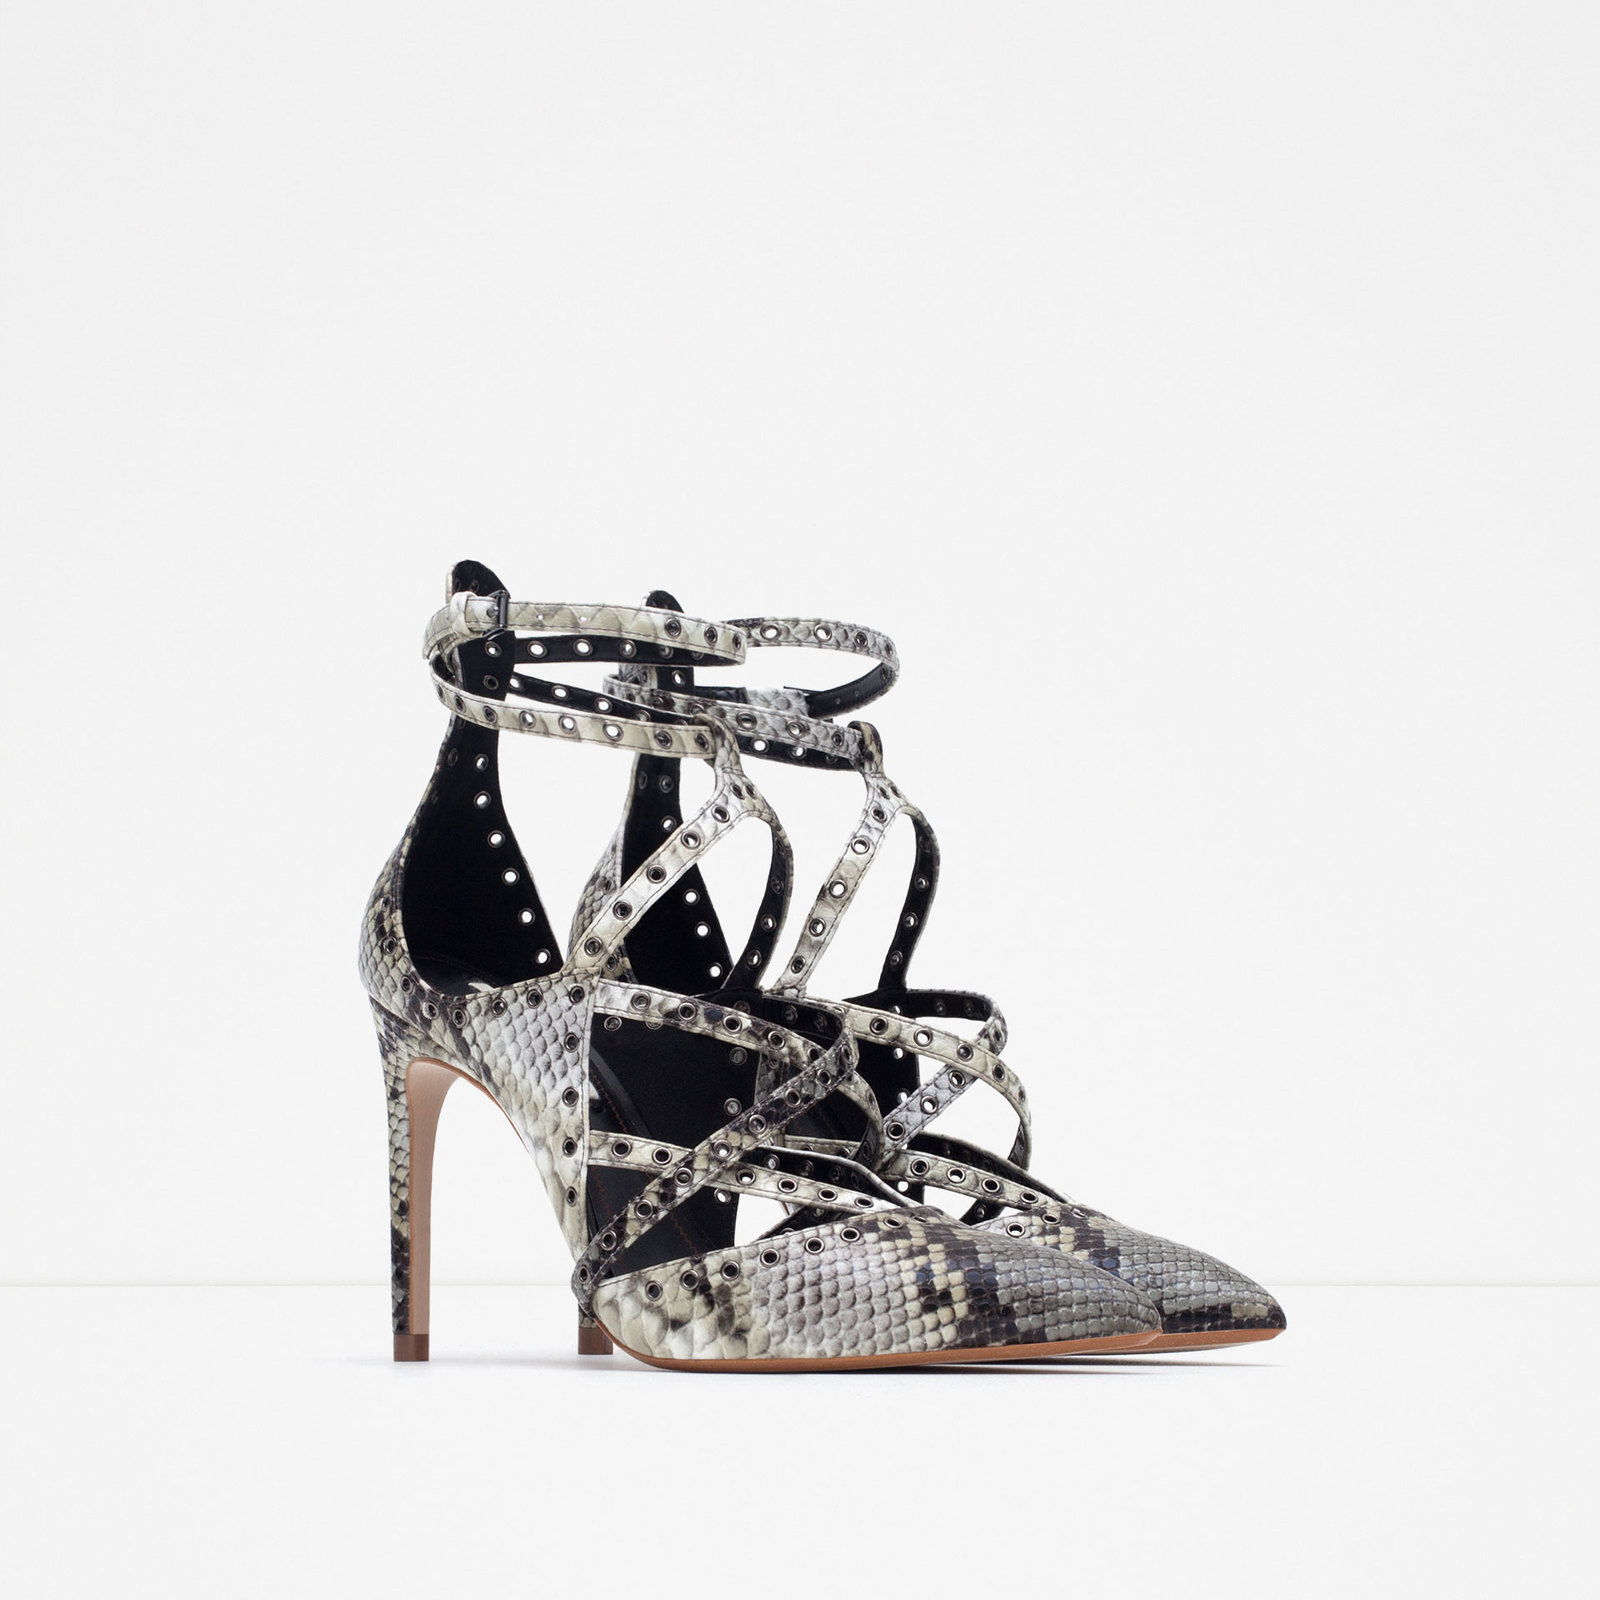 Zara női mintás magassarkú cipő 2015.10.15 fotója